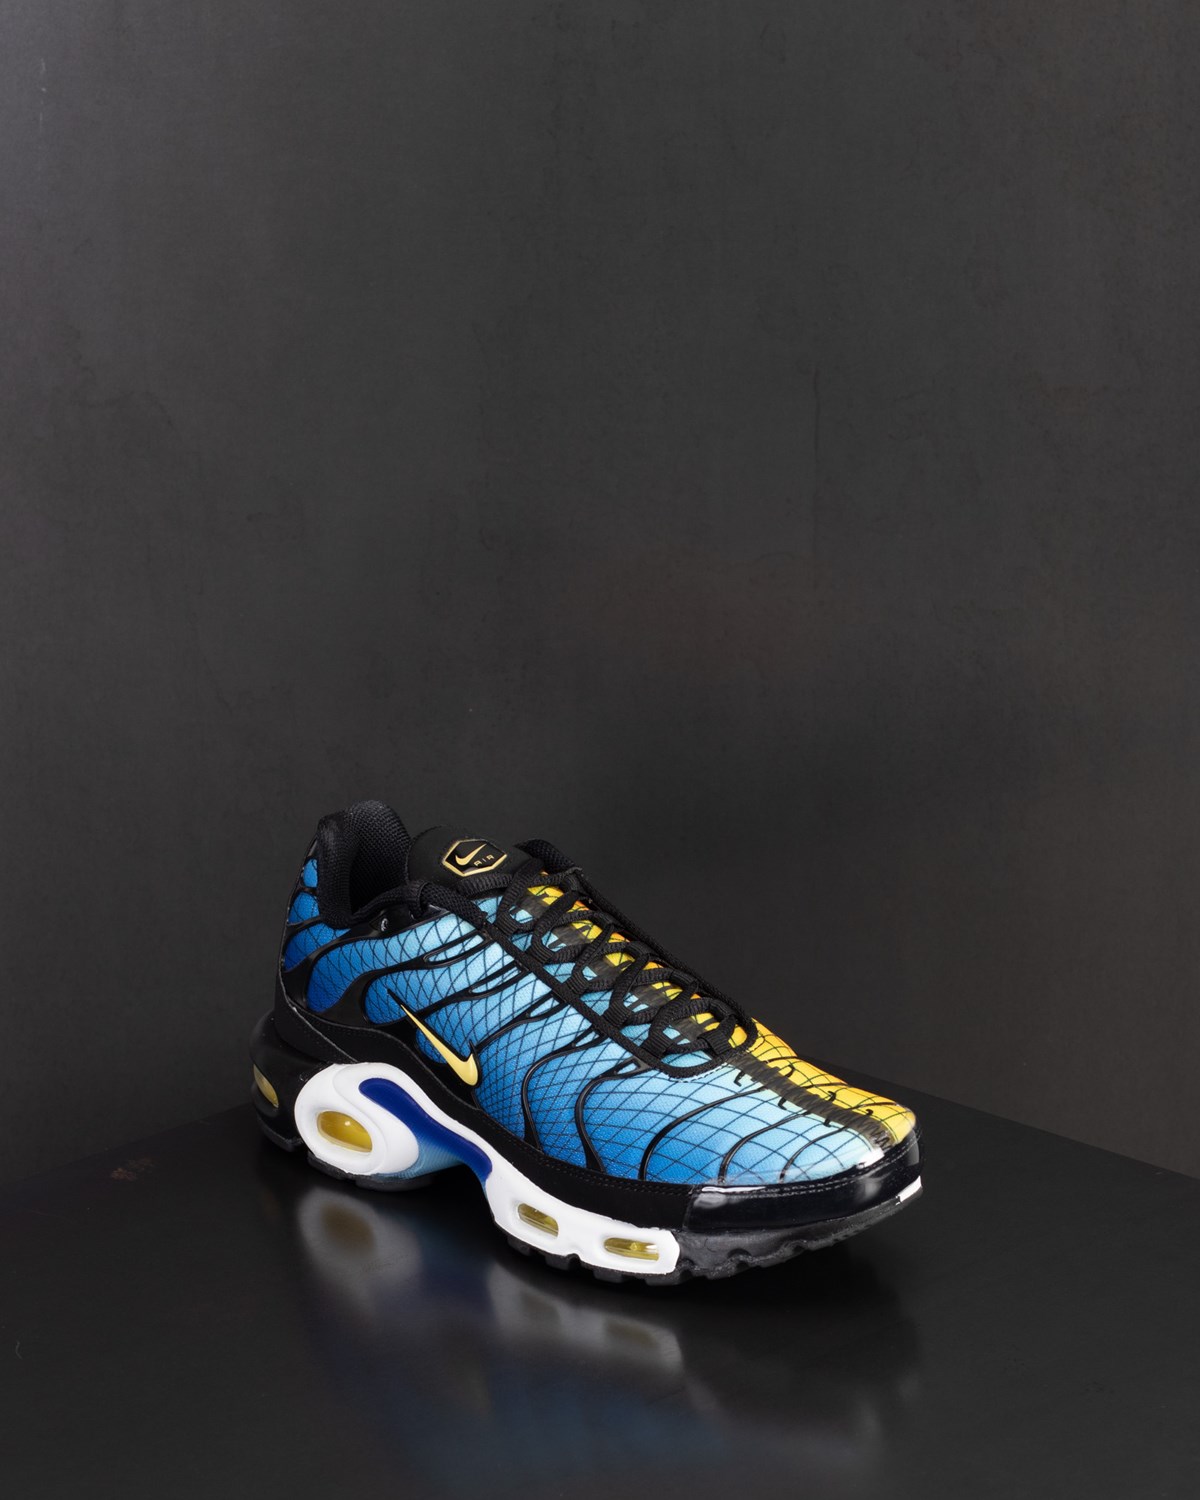 Air Max Plus TN SE Greedy Nike Footwear Sneakers Blue